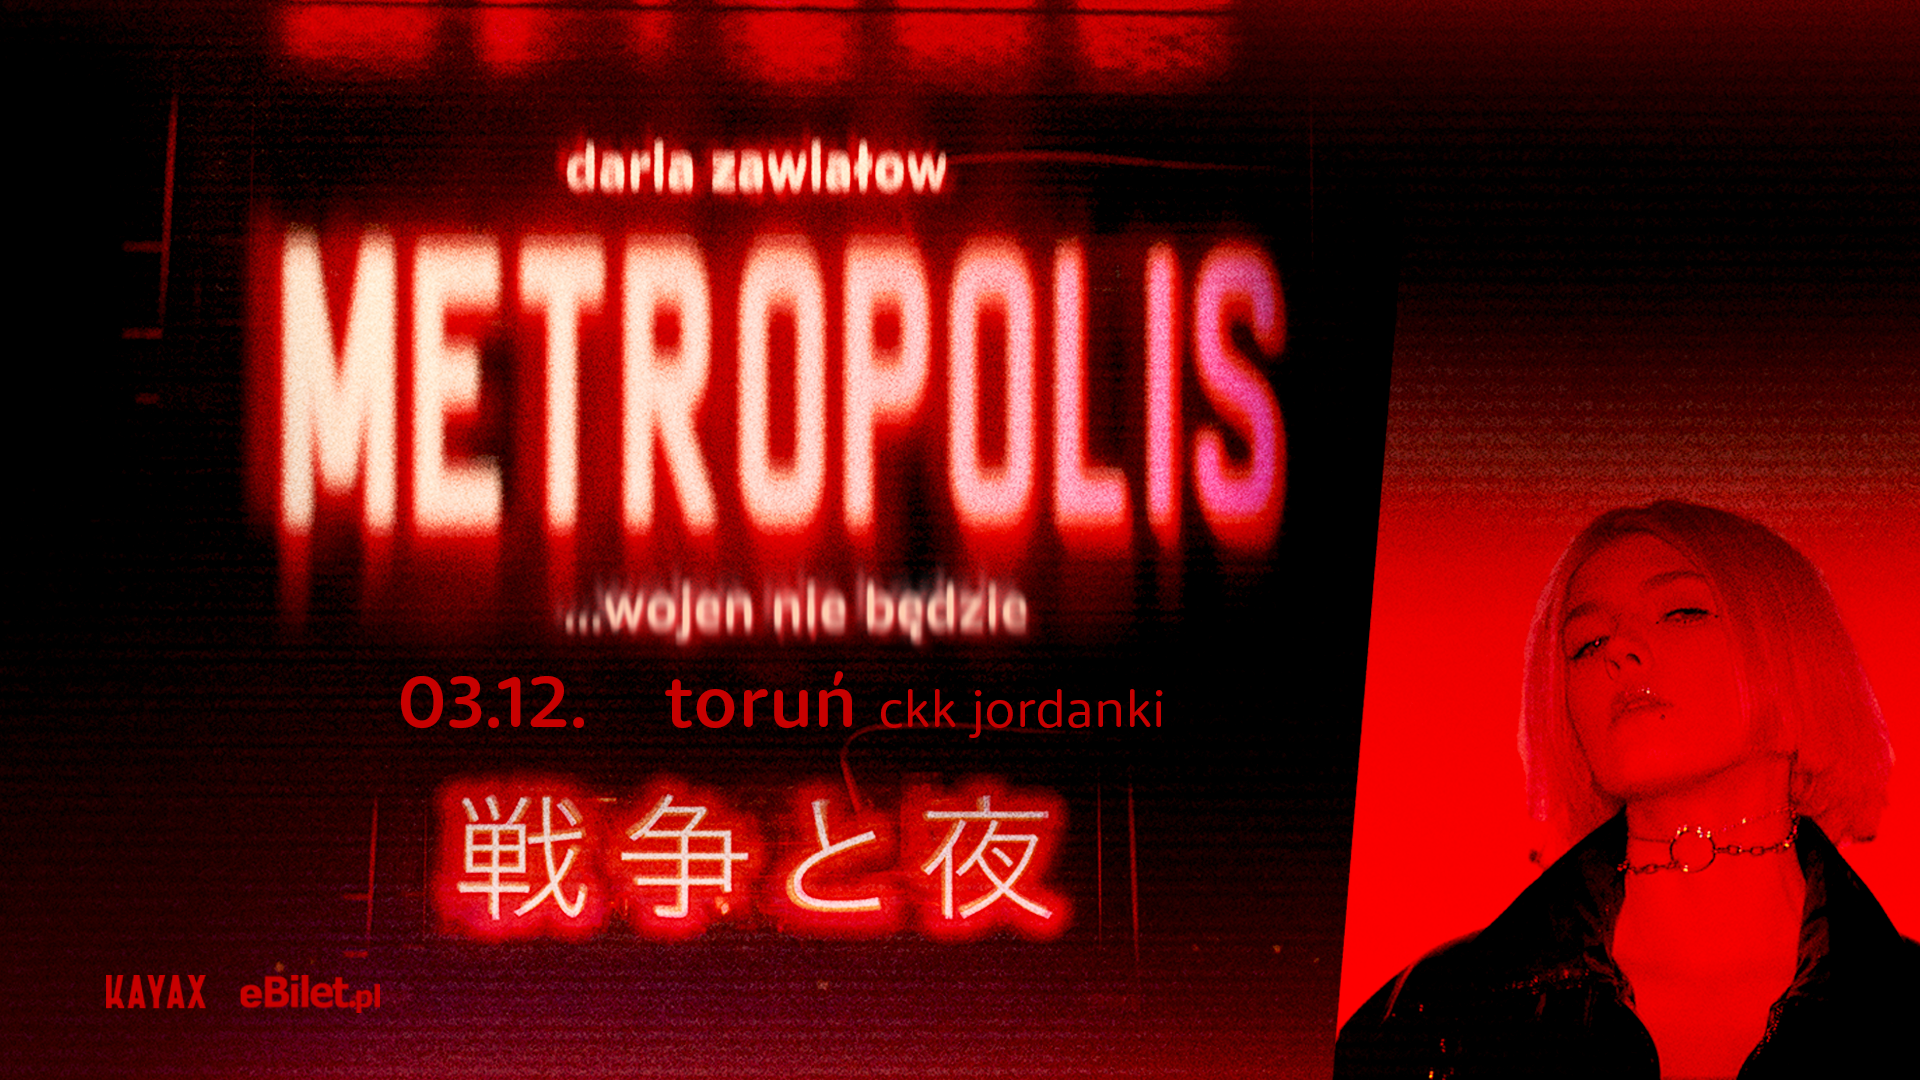 Daria Zawiałow METROPOLIS …wojen nie będzie